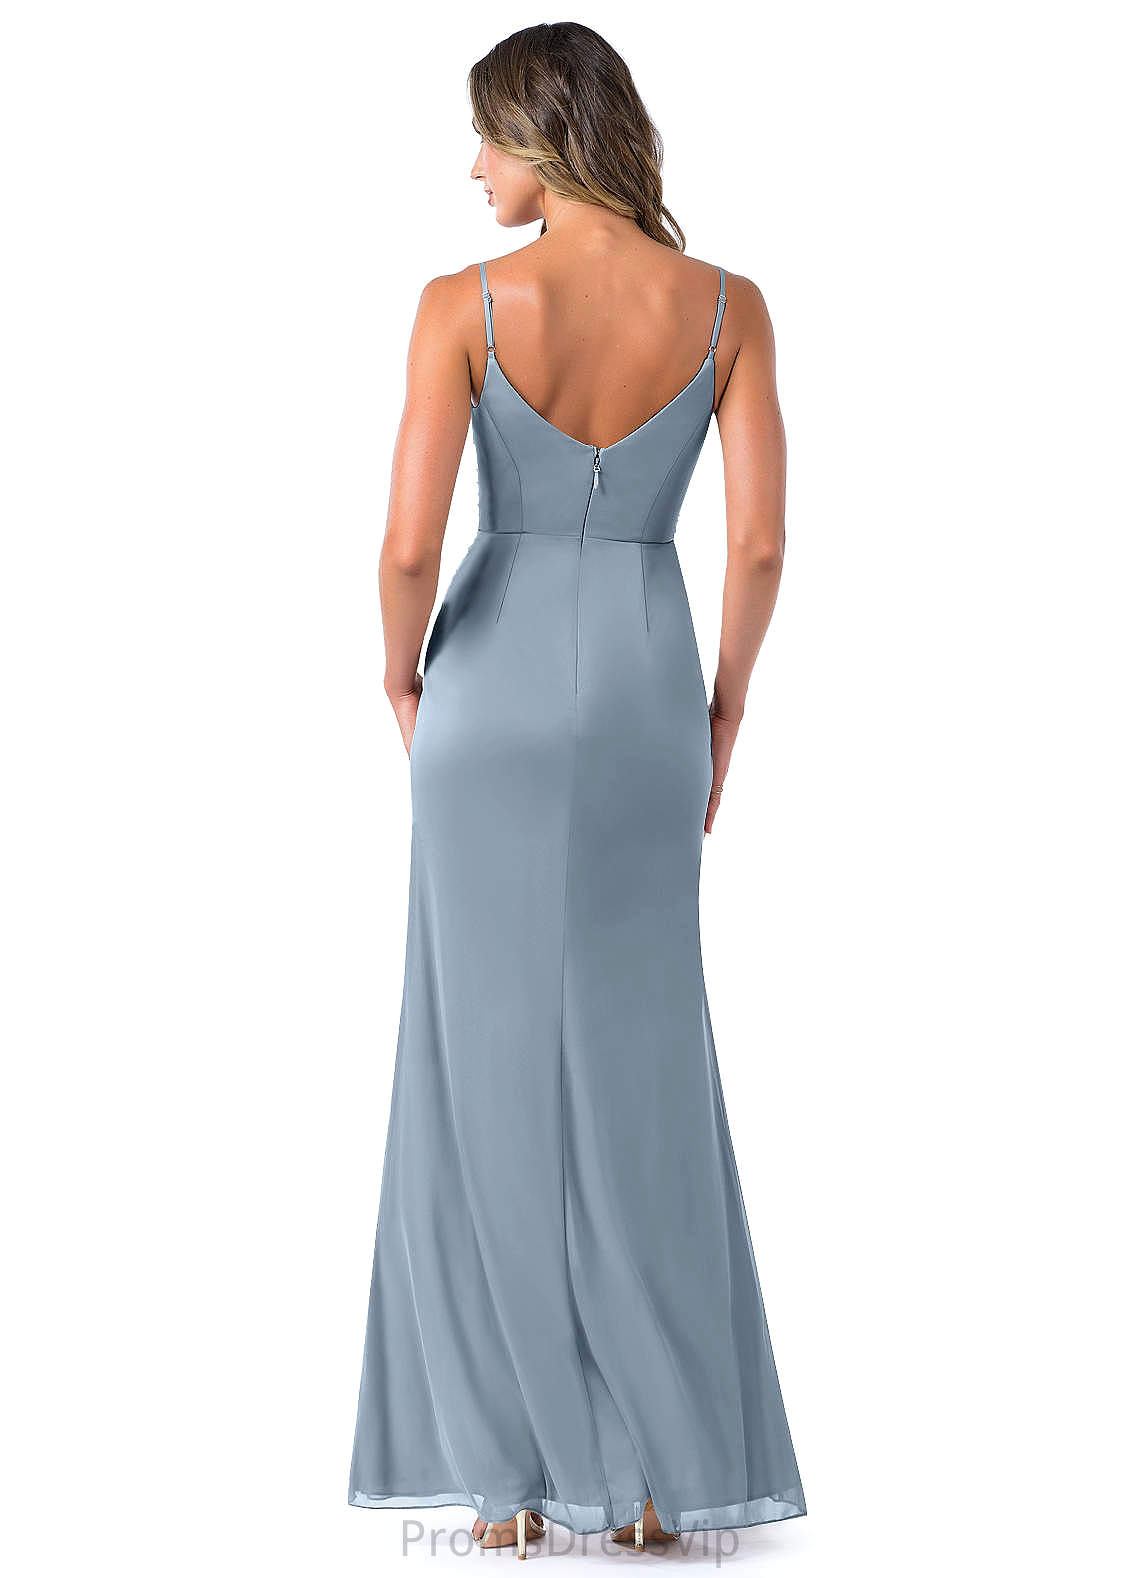 Monica V-Neck Sleeveless Natural Waist A-Line/Princess Floor Length Bridesmaid Dresses